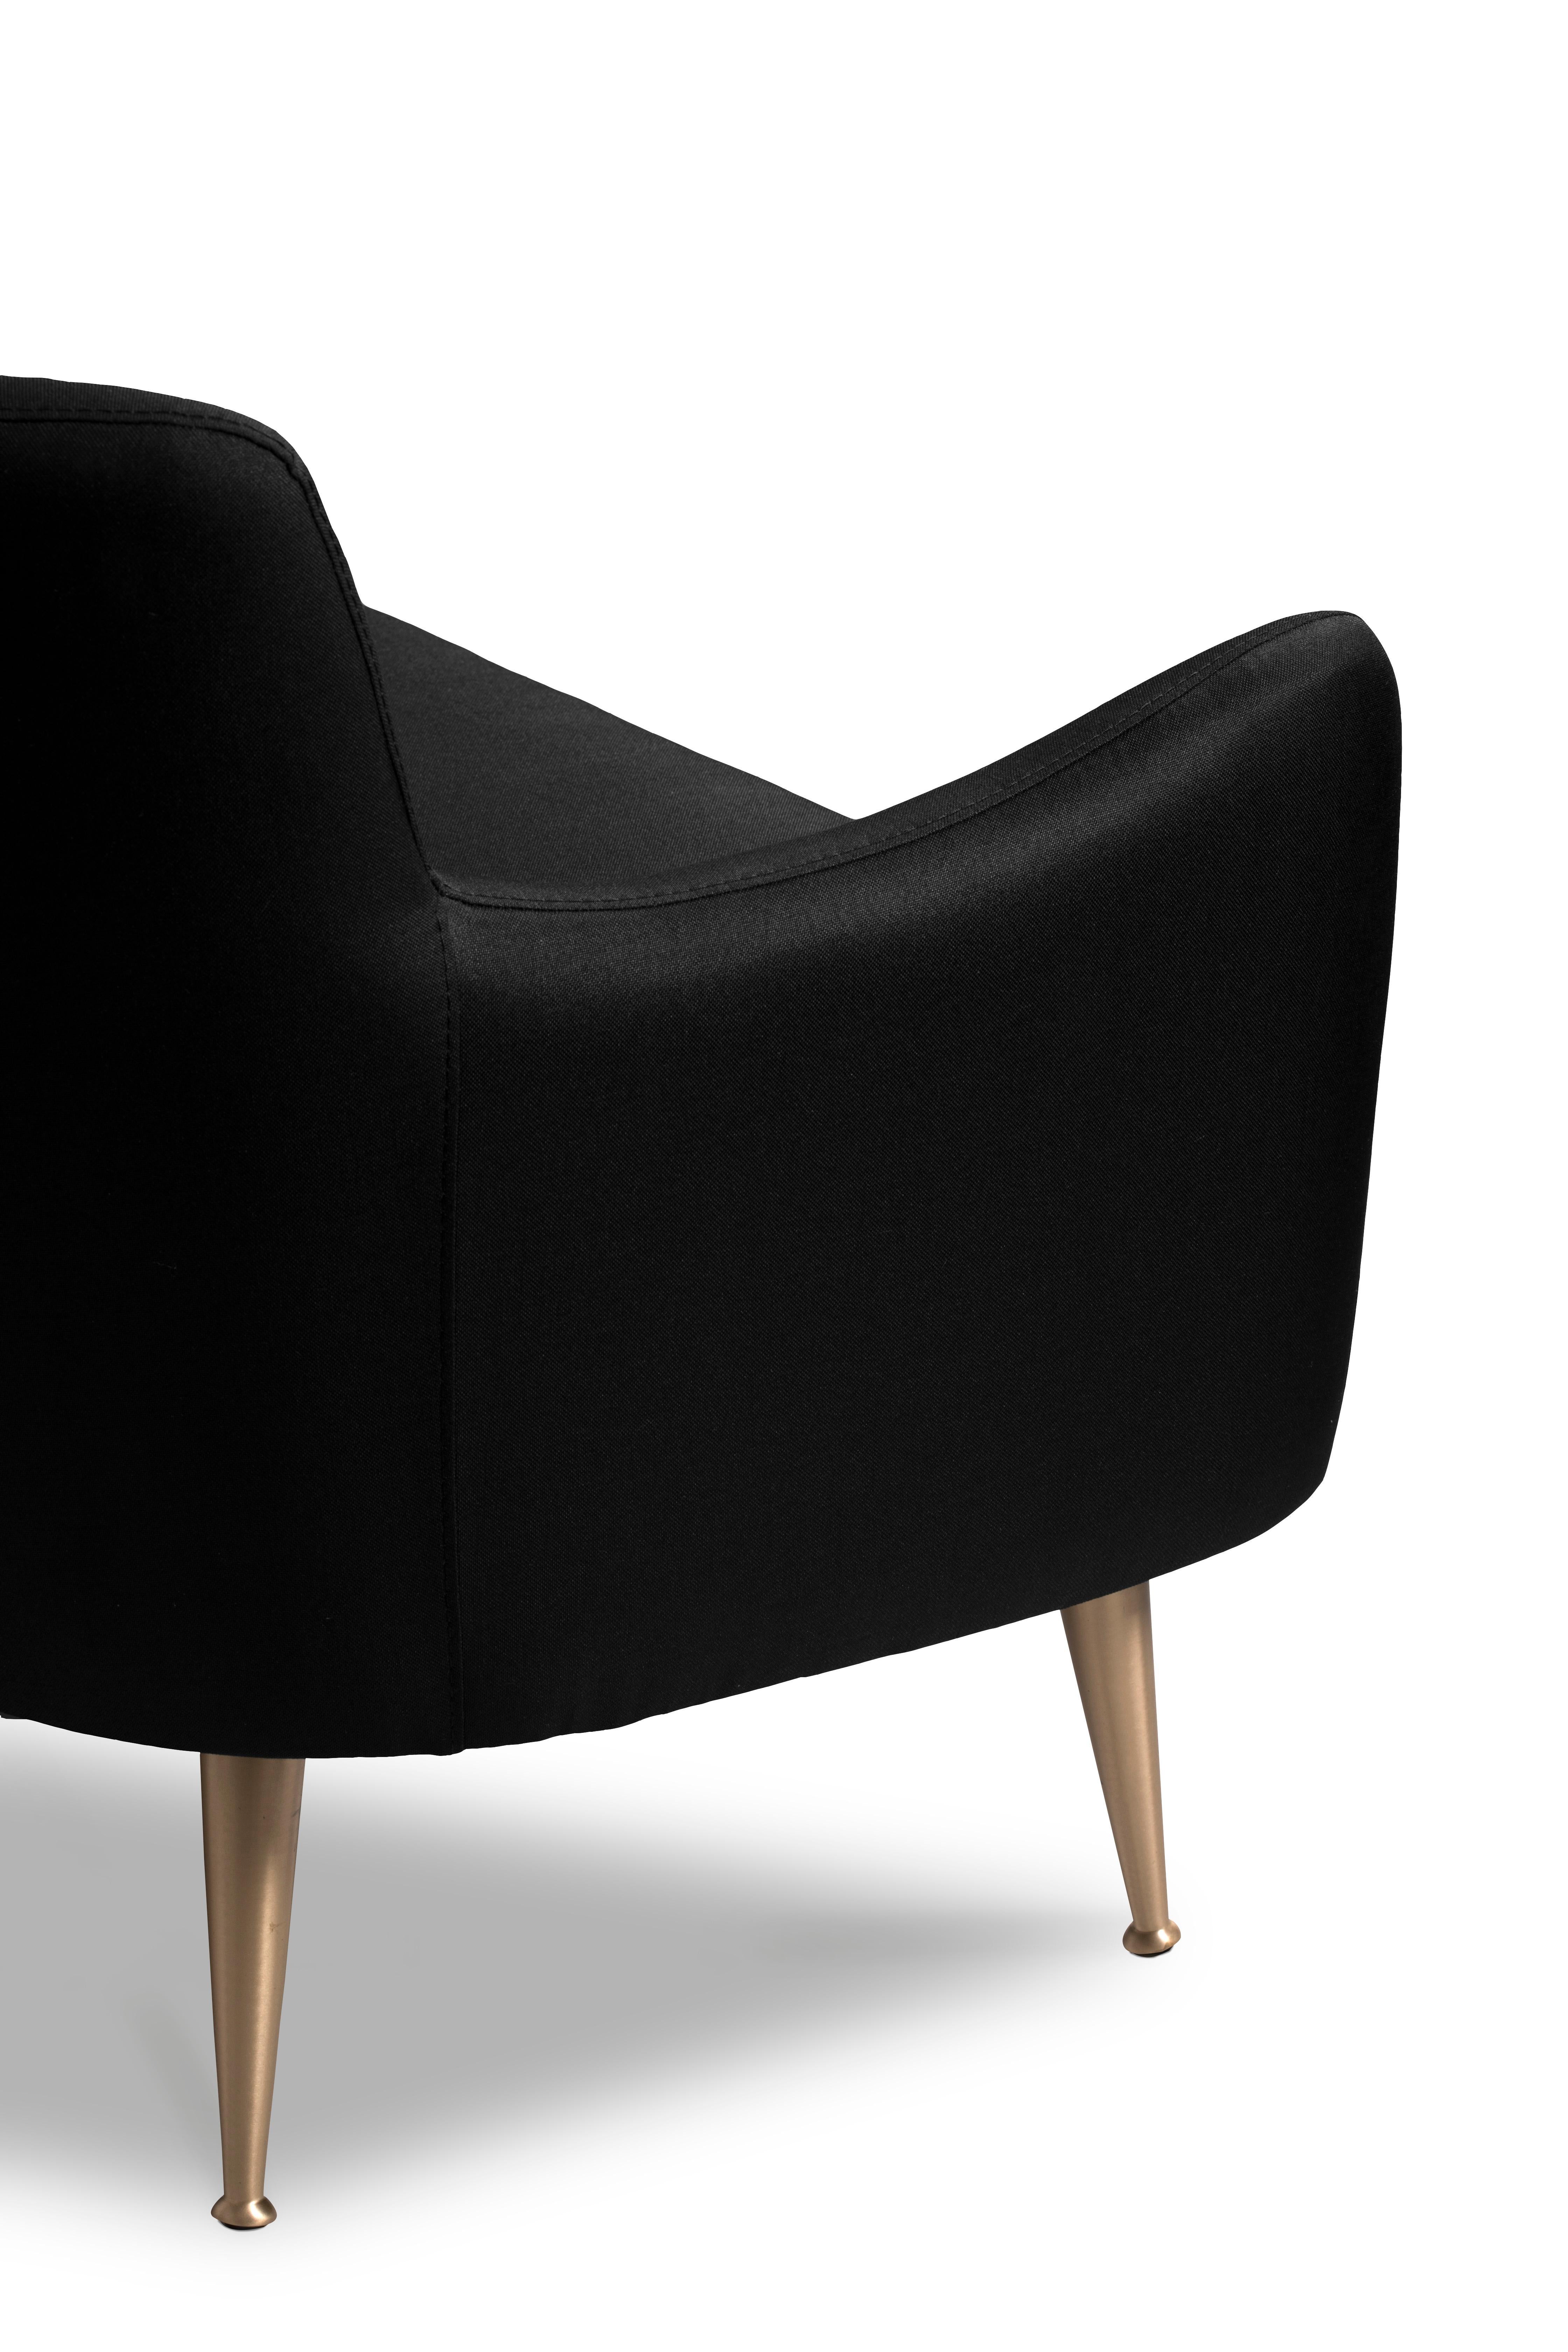 Dandridge Sofa in Black In New Condition For Sale In New York, NY